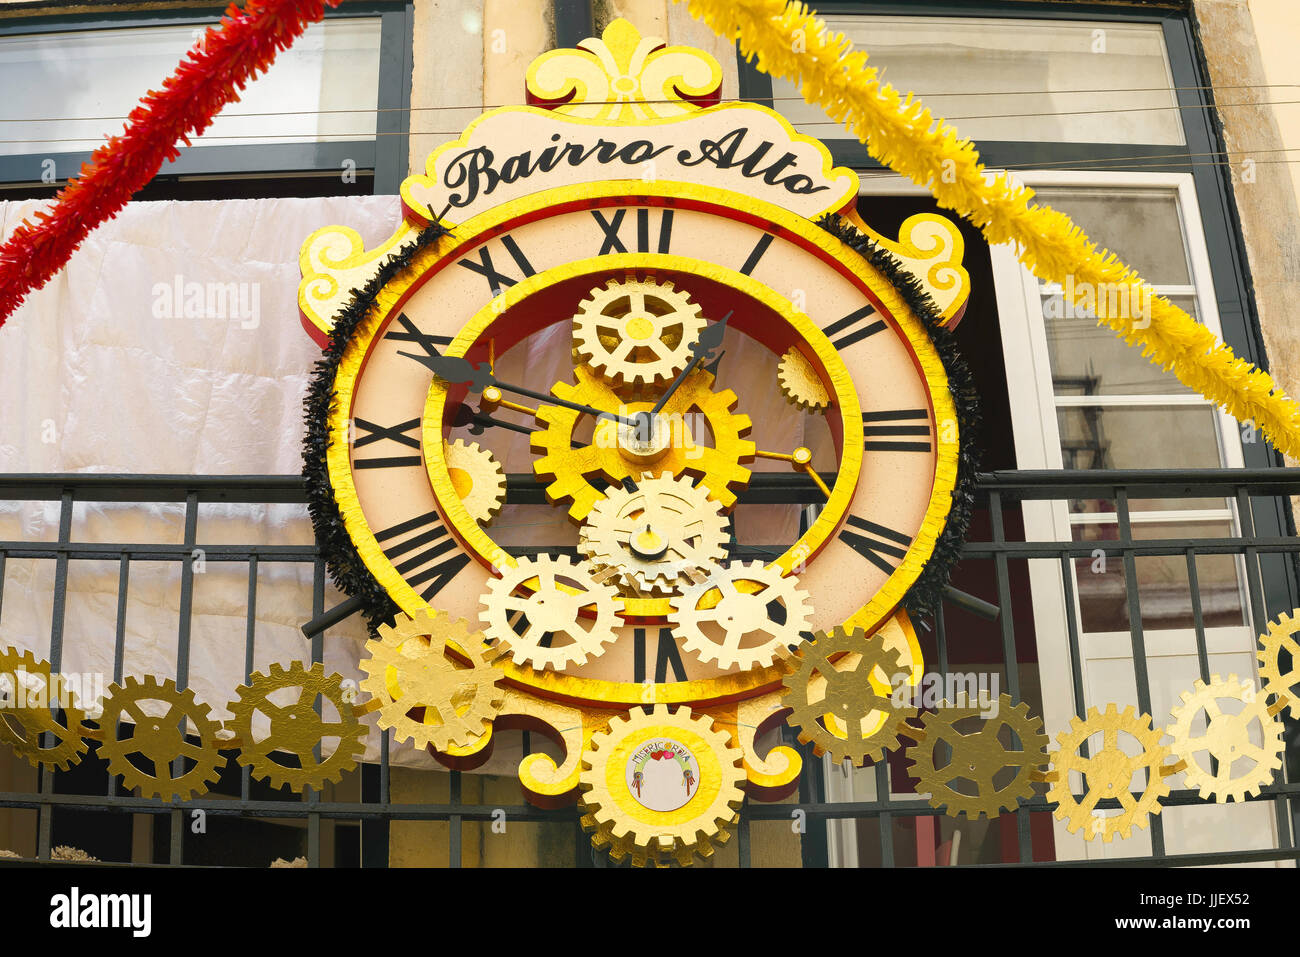 Lisbona Bairro Alto, vista di un enorme orologio color oro sopra un bar in una strada nel quartiere Bairro Alto della città vecchia di Lisbona, Portogallo. Foto Stock